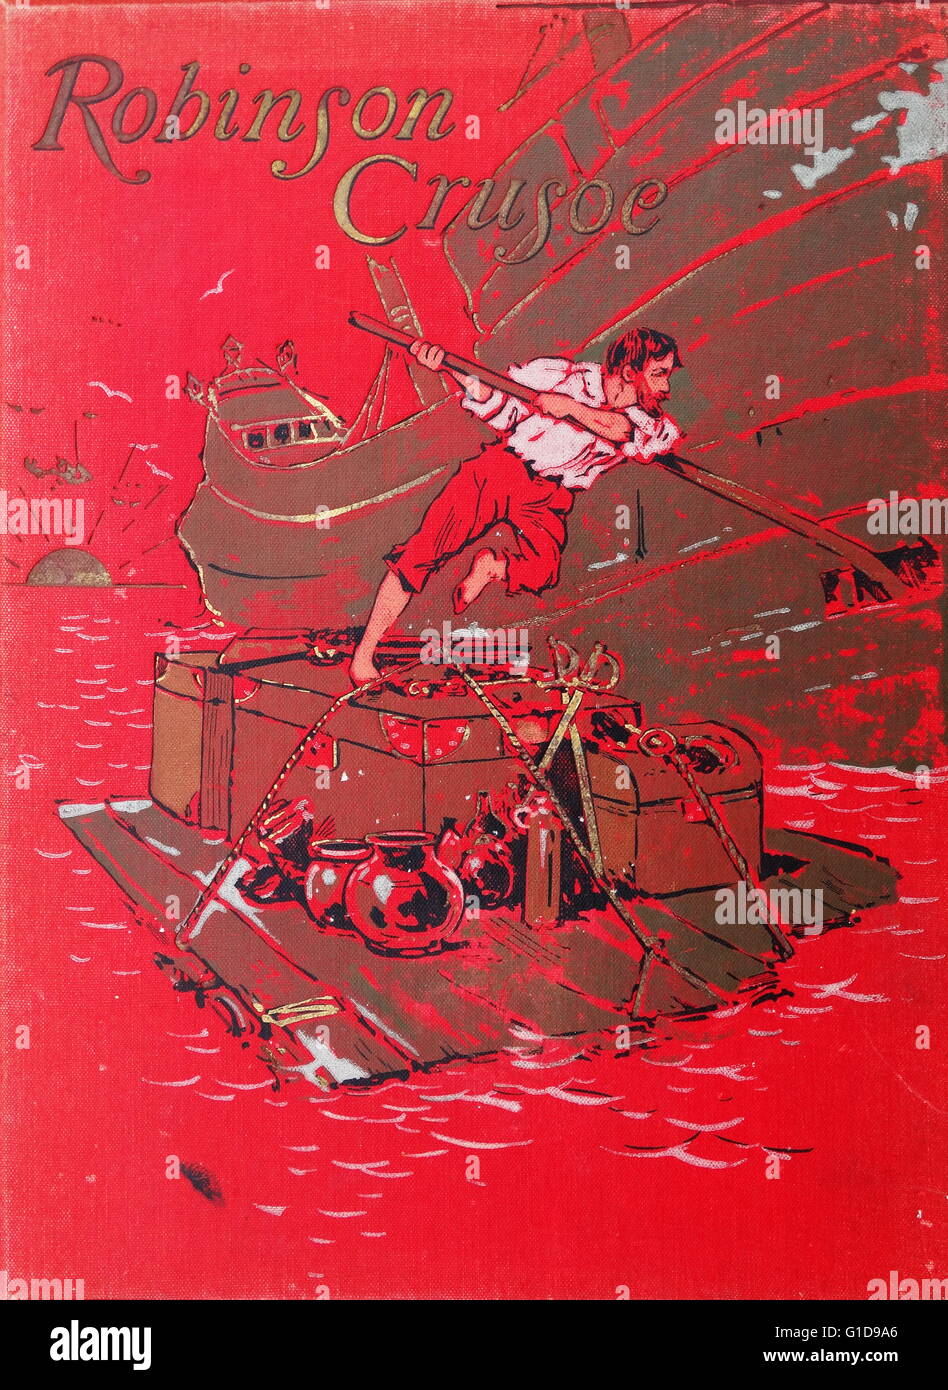 Vordere Abdeckung Abbildung bilden die illustrierte Version von Robinson Crusoe von Daniel Defoe 1895. Robin Crusoe erzählt die Geschichte eines Explorer-Schiff zerstört, auf einer Insel, wo er viele Herausforderungen zu überleben muss. Stockfoto